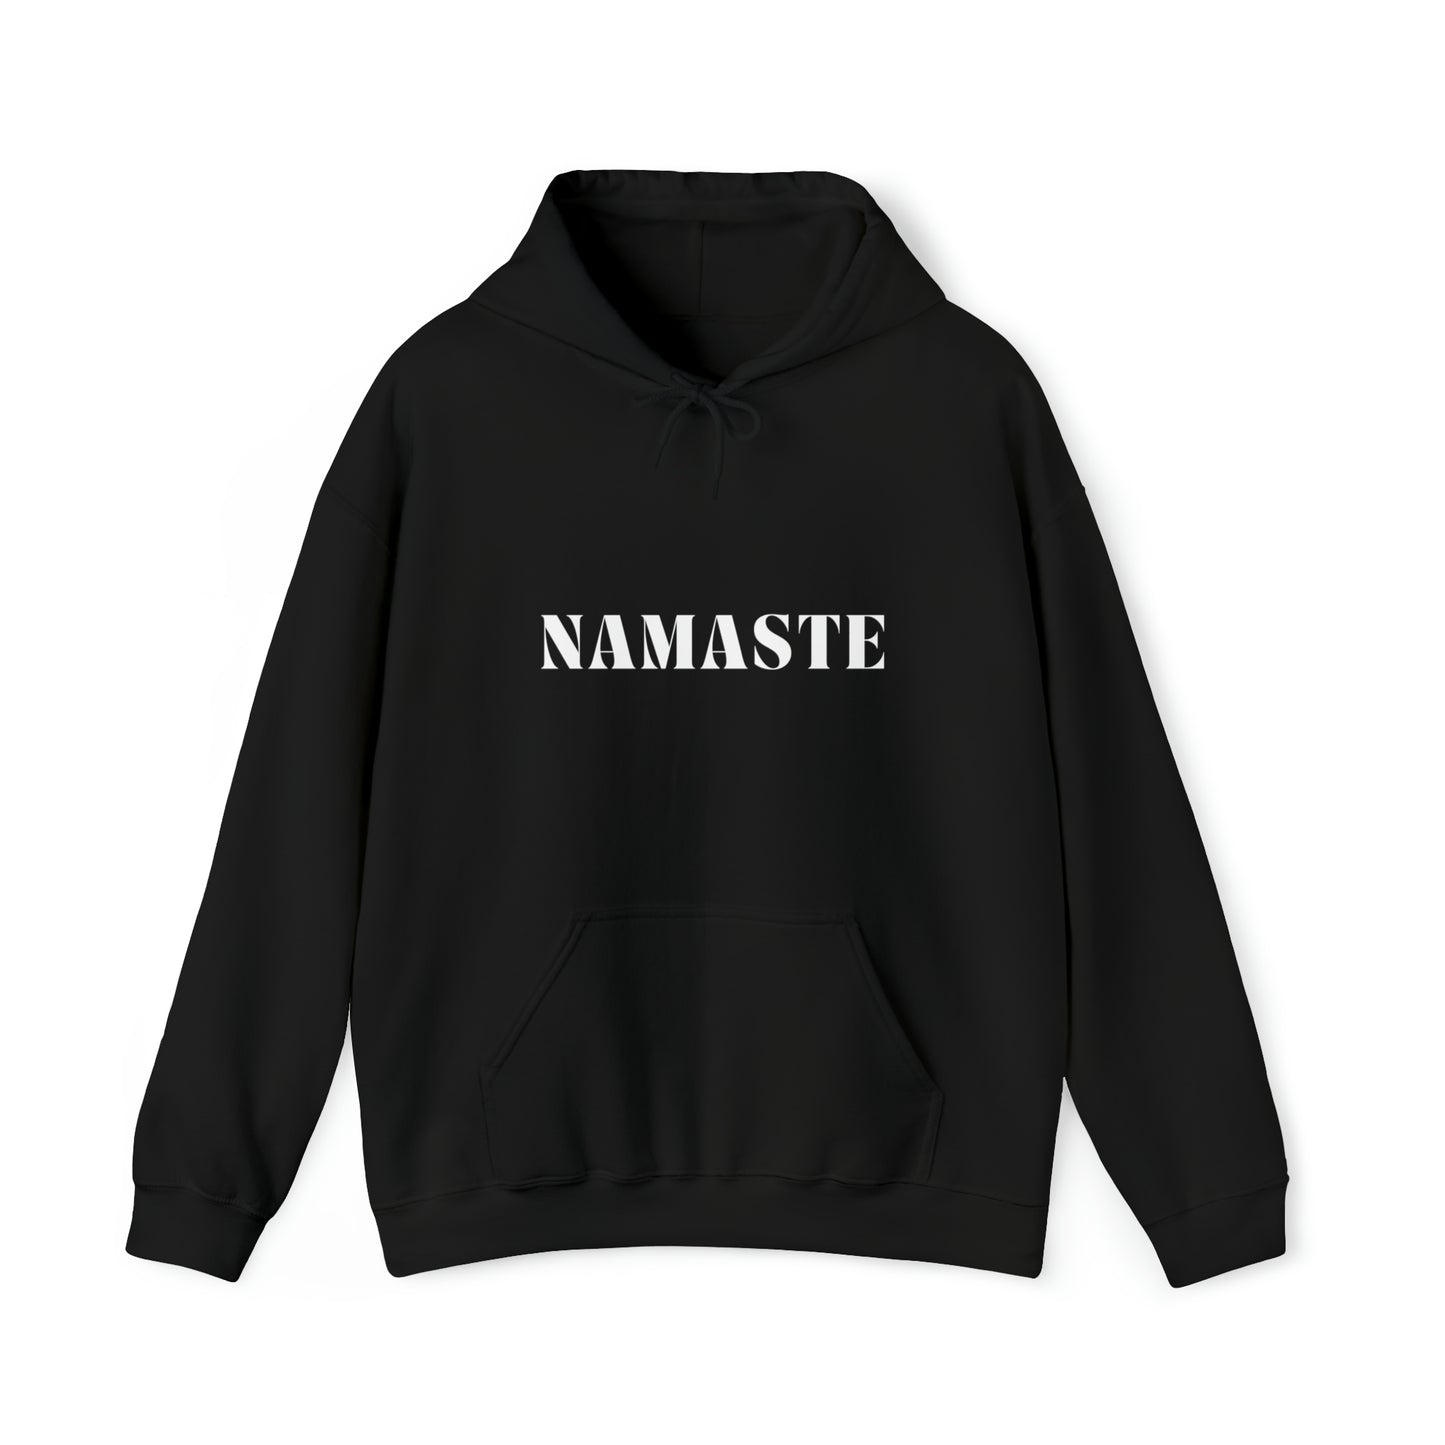 S Black Namaste Hoodie from HoodySZN.com